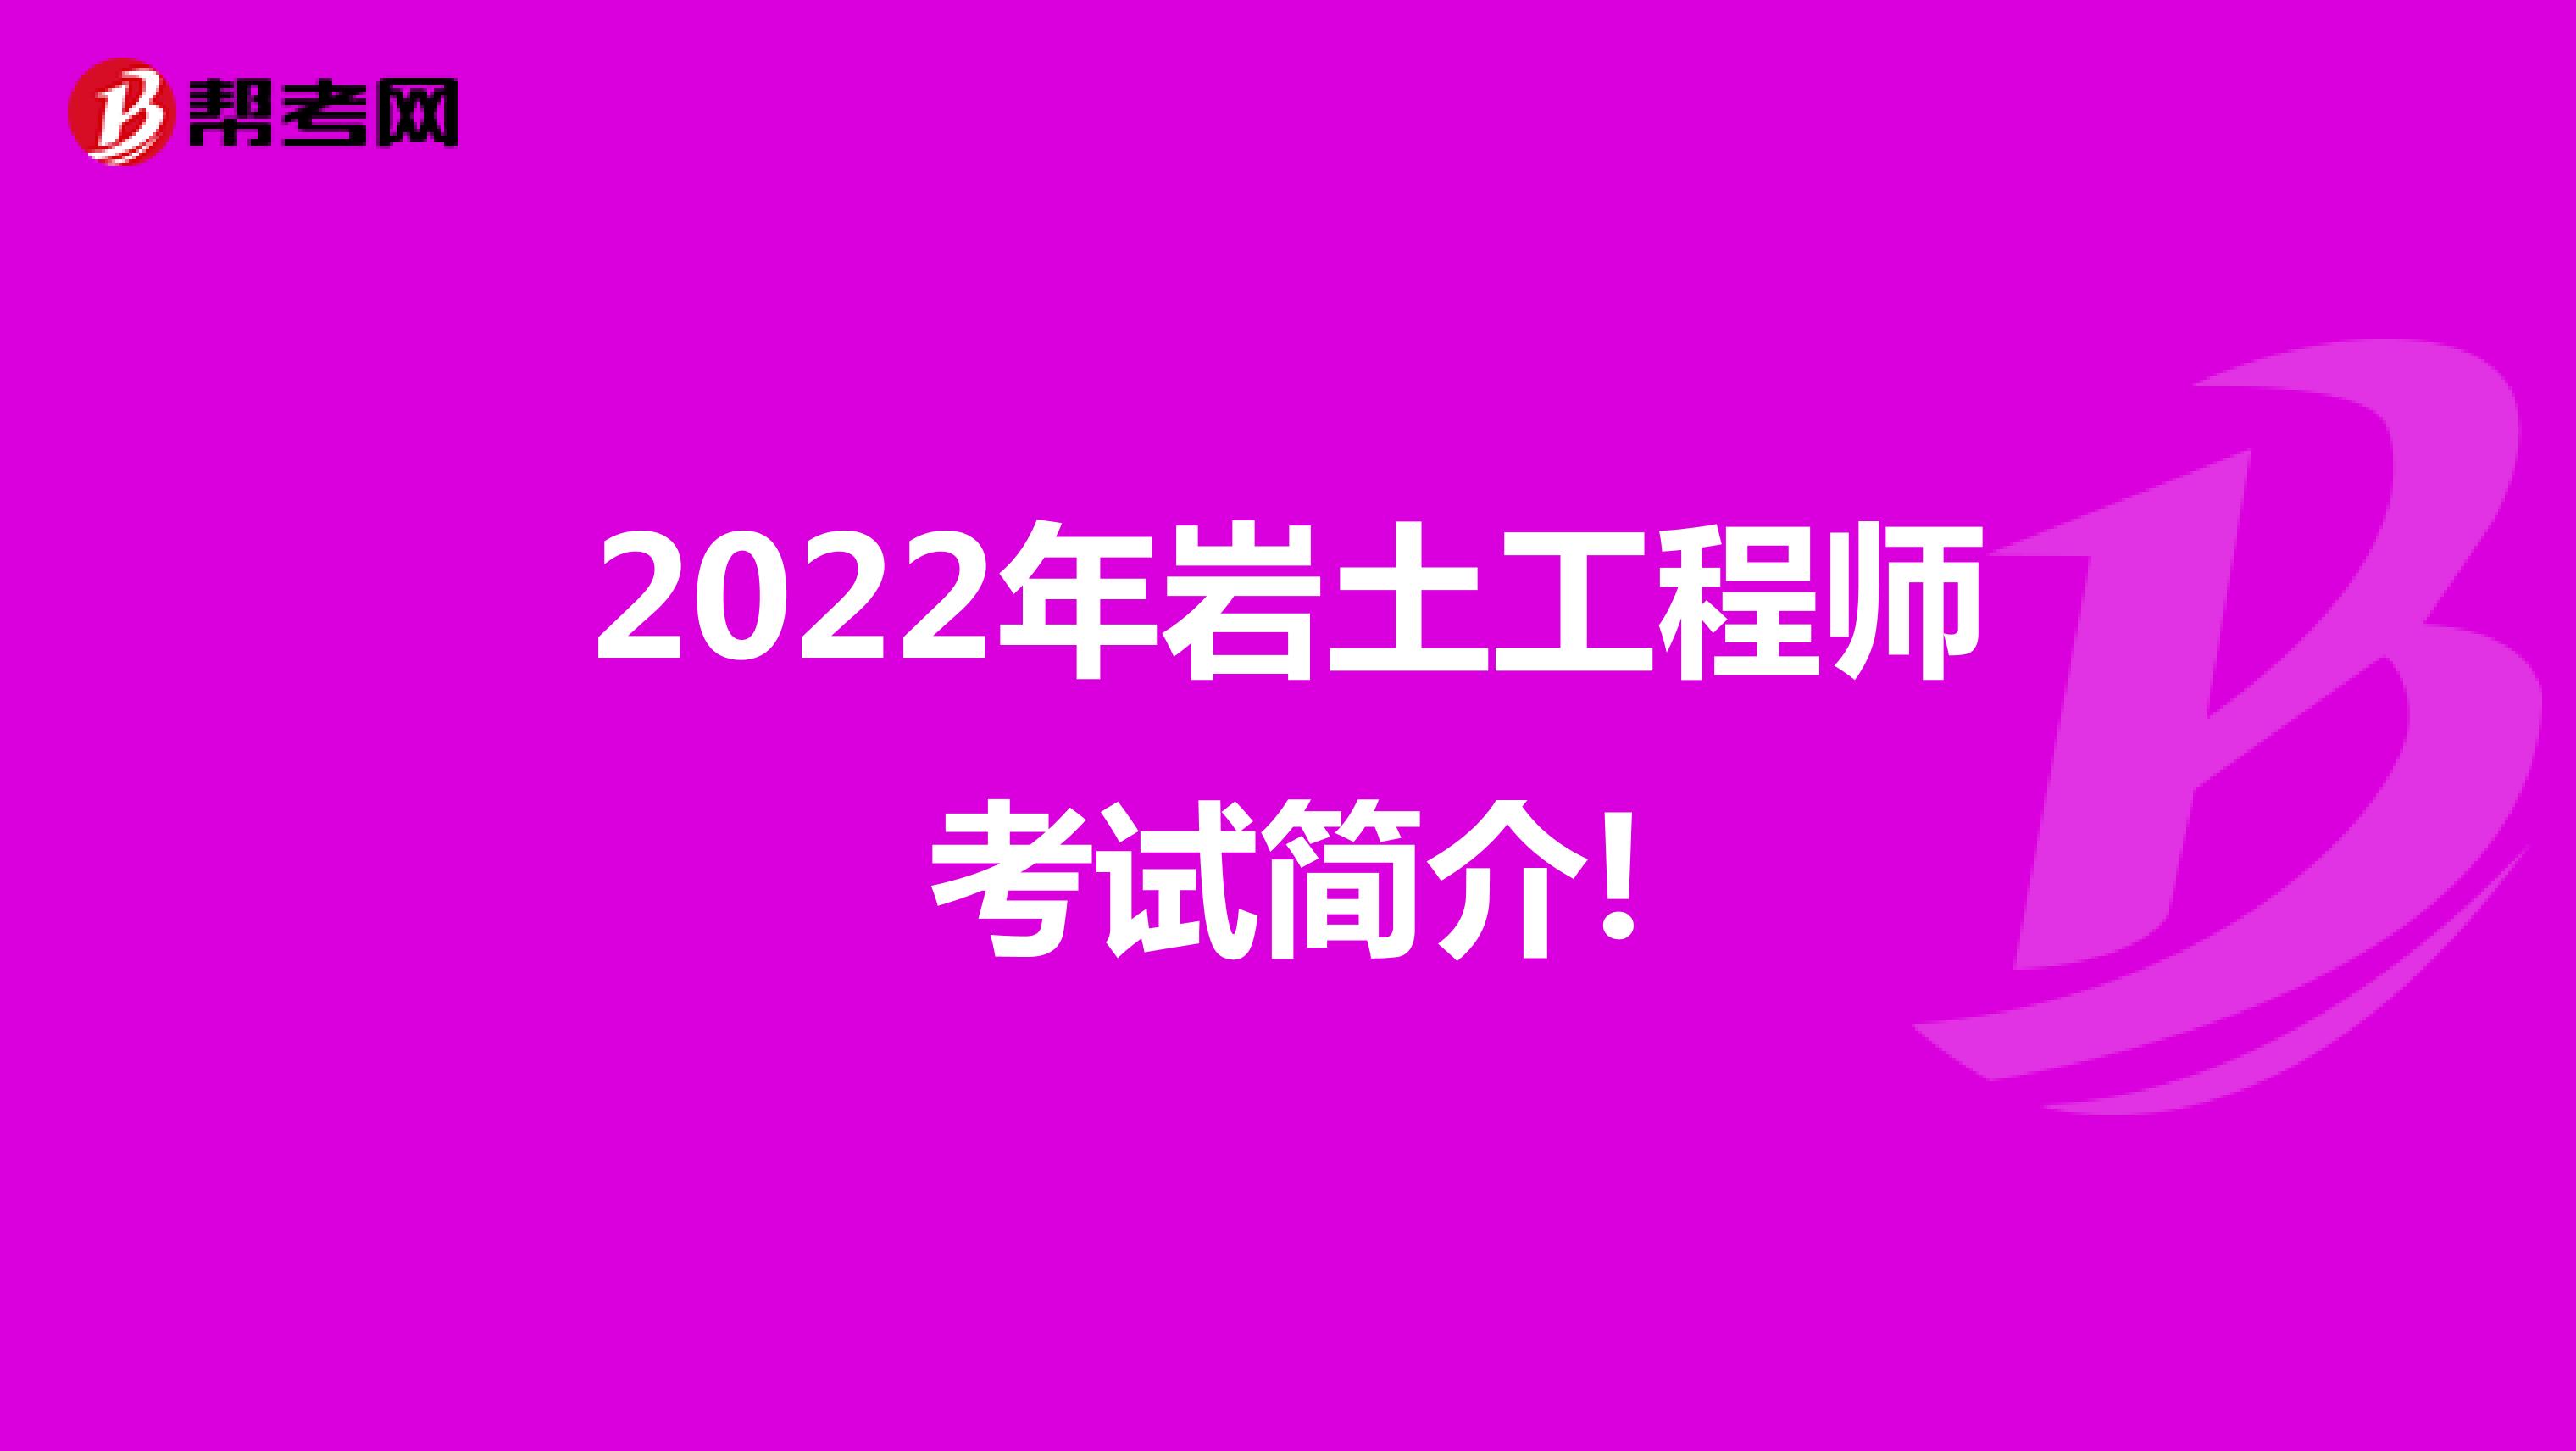 2022年岩土工程师考试简介!